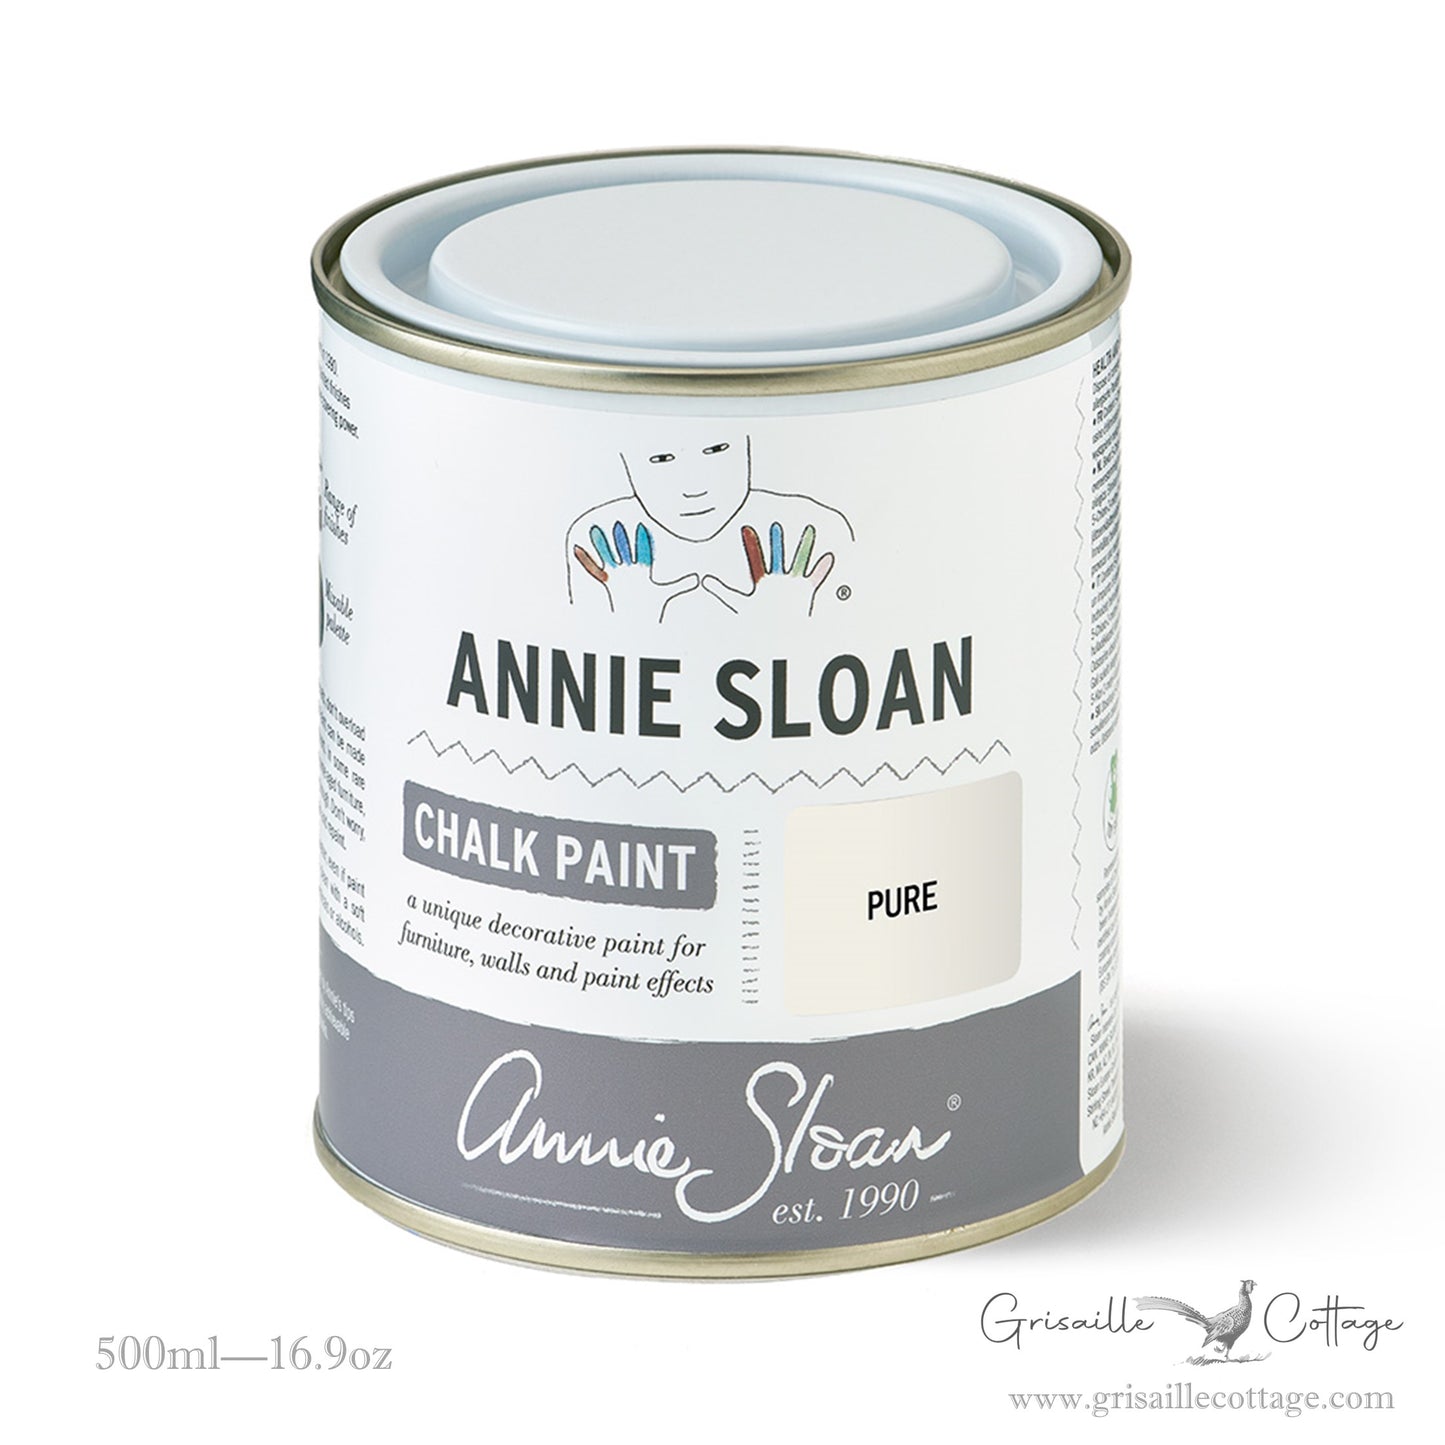 Pure - Annie Sloan Chalk Paint